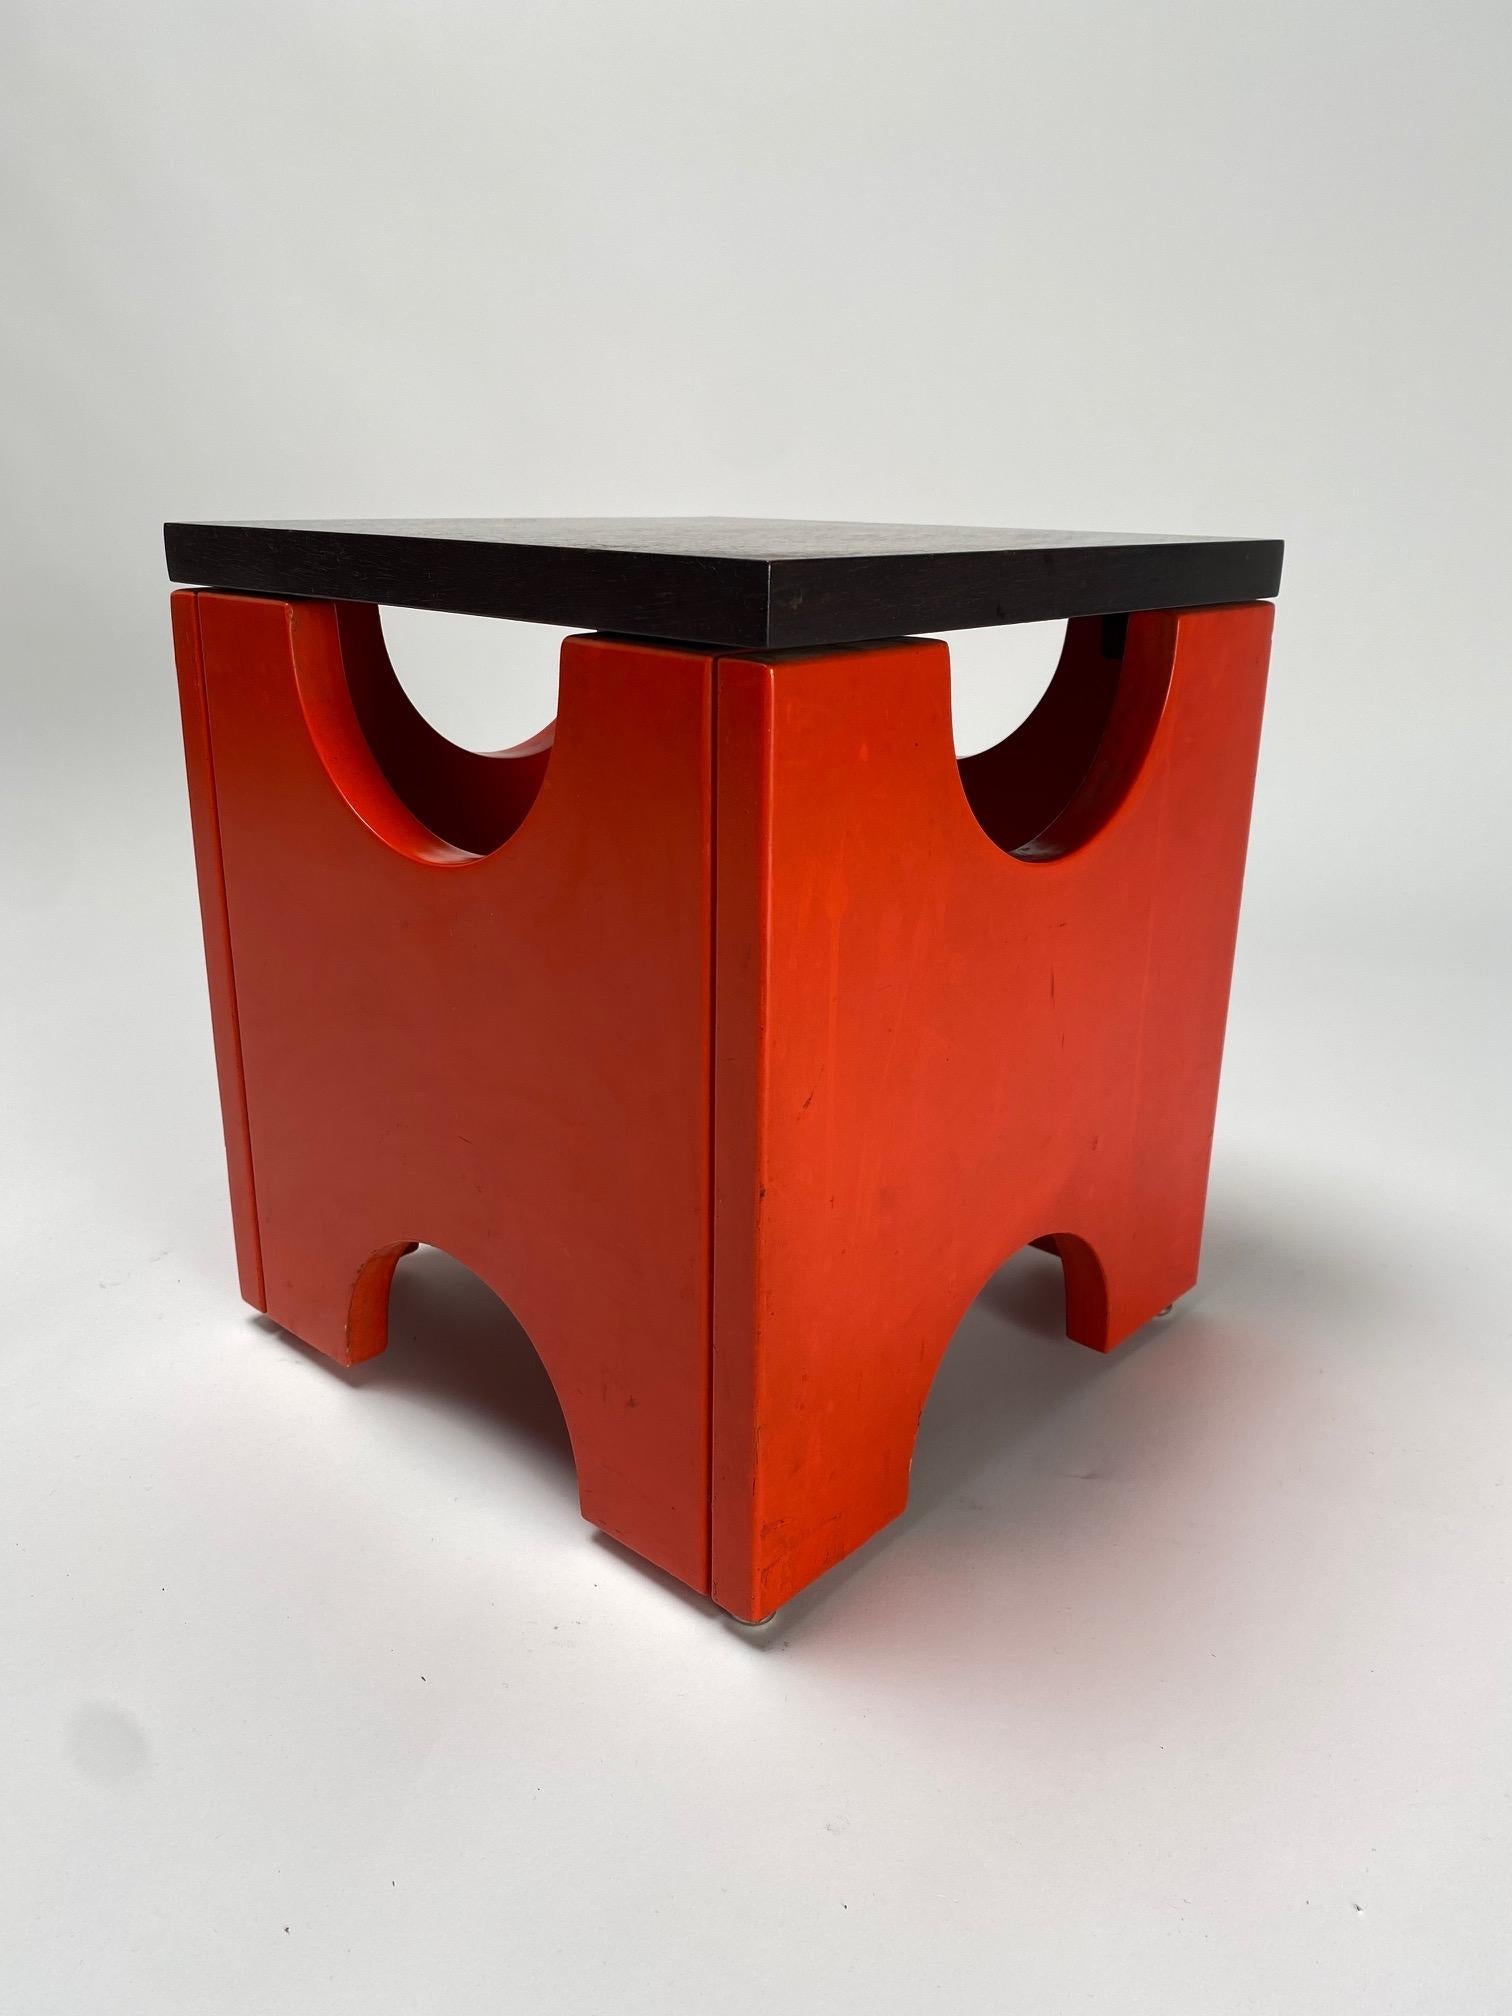 Ettore Sottsass, Dado T29 Hocker, Poltronova Produktion, Italien, 1960er Jahre

  Es ist eines der ikonischsten Werke des berühmten italienischen Architekten und Designers Ettore Sottsass. Der hölzerne Sockel ist rot lackiert, die Platte ist aus